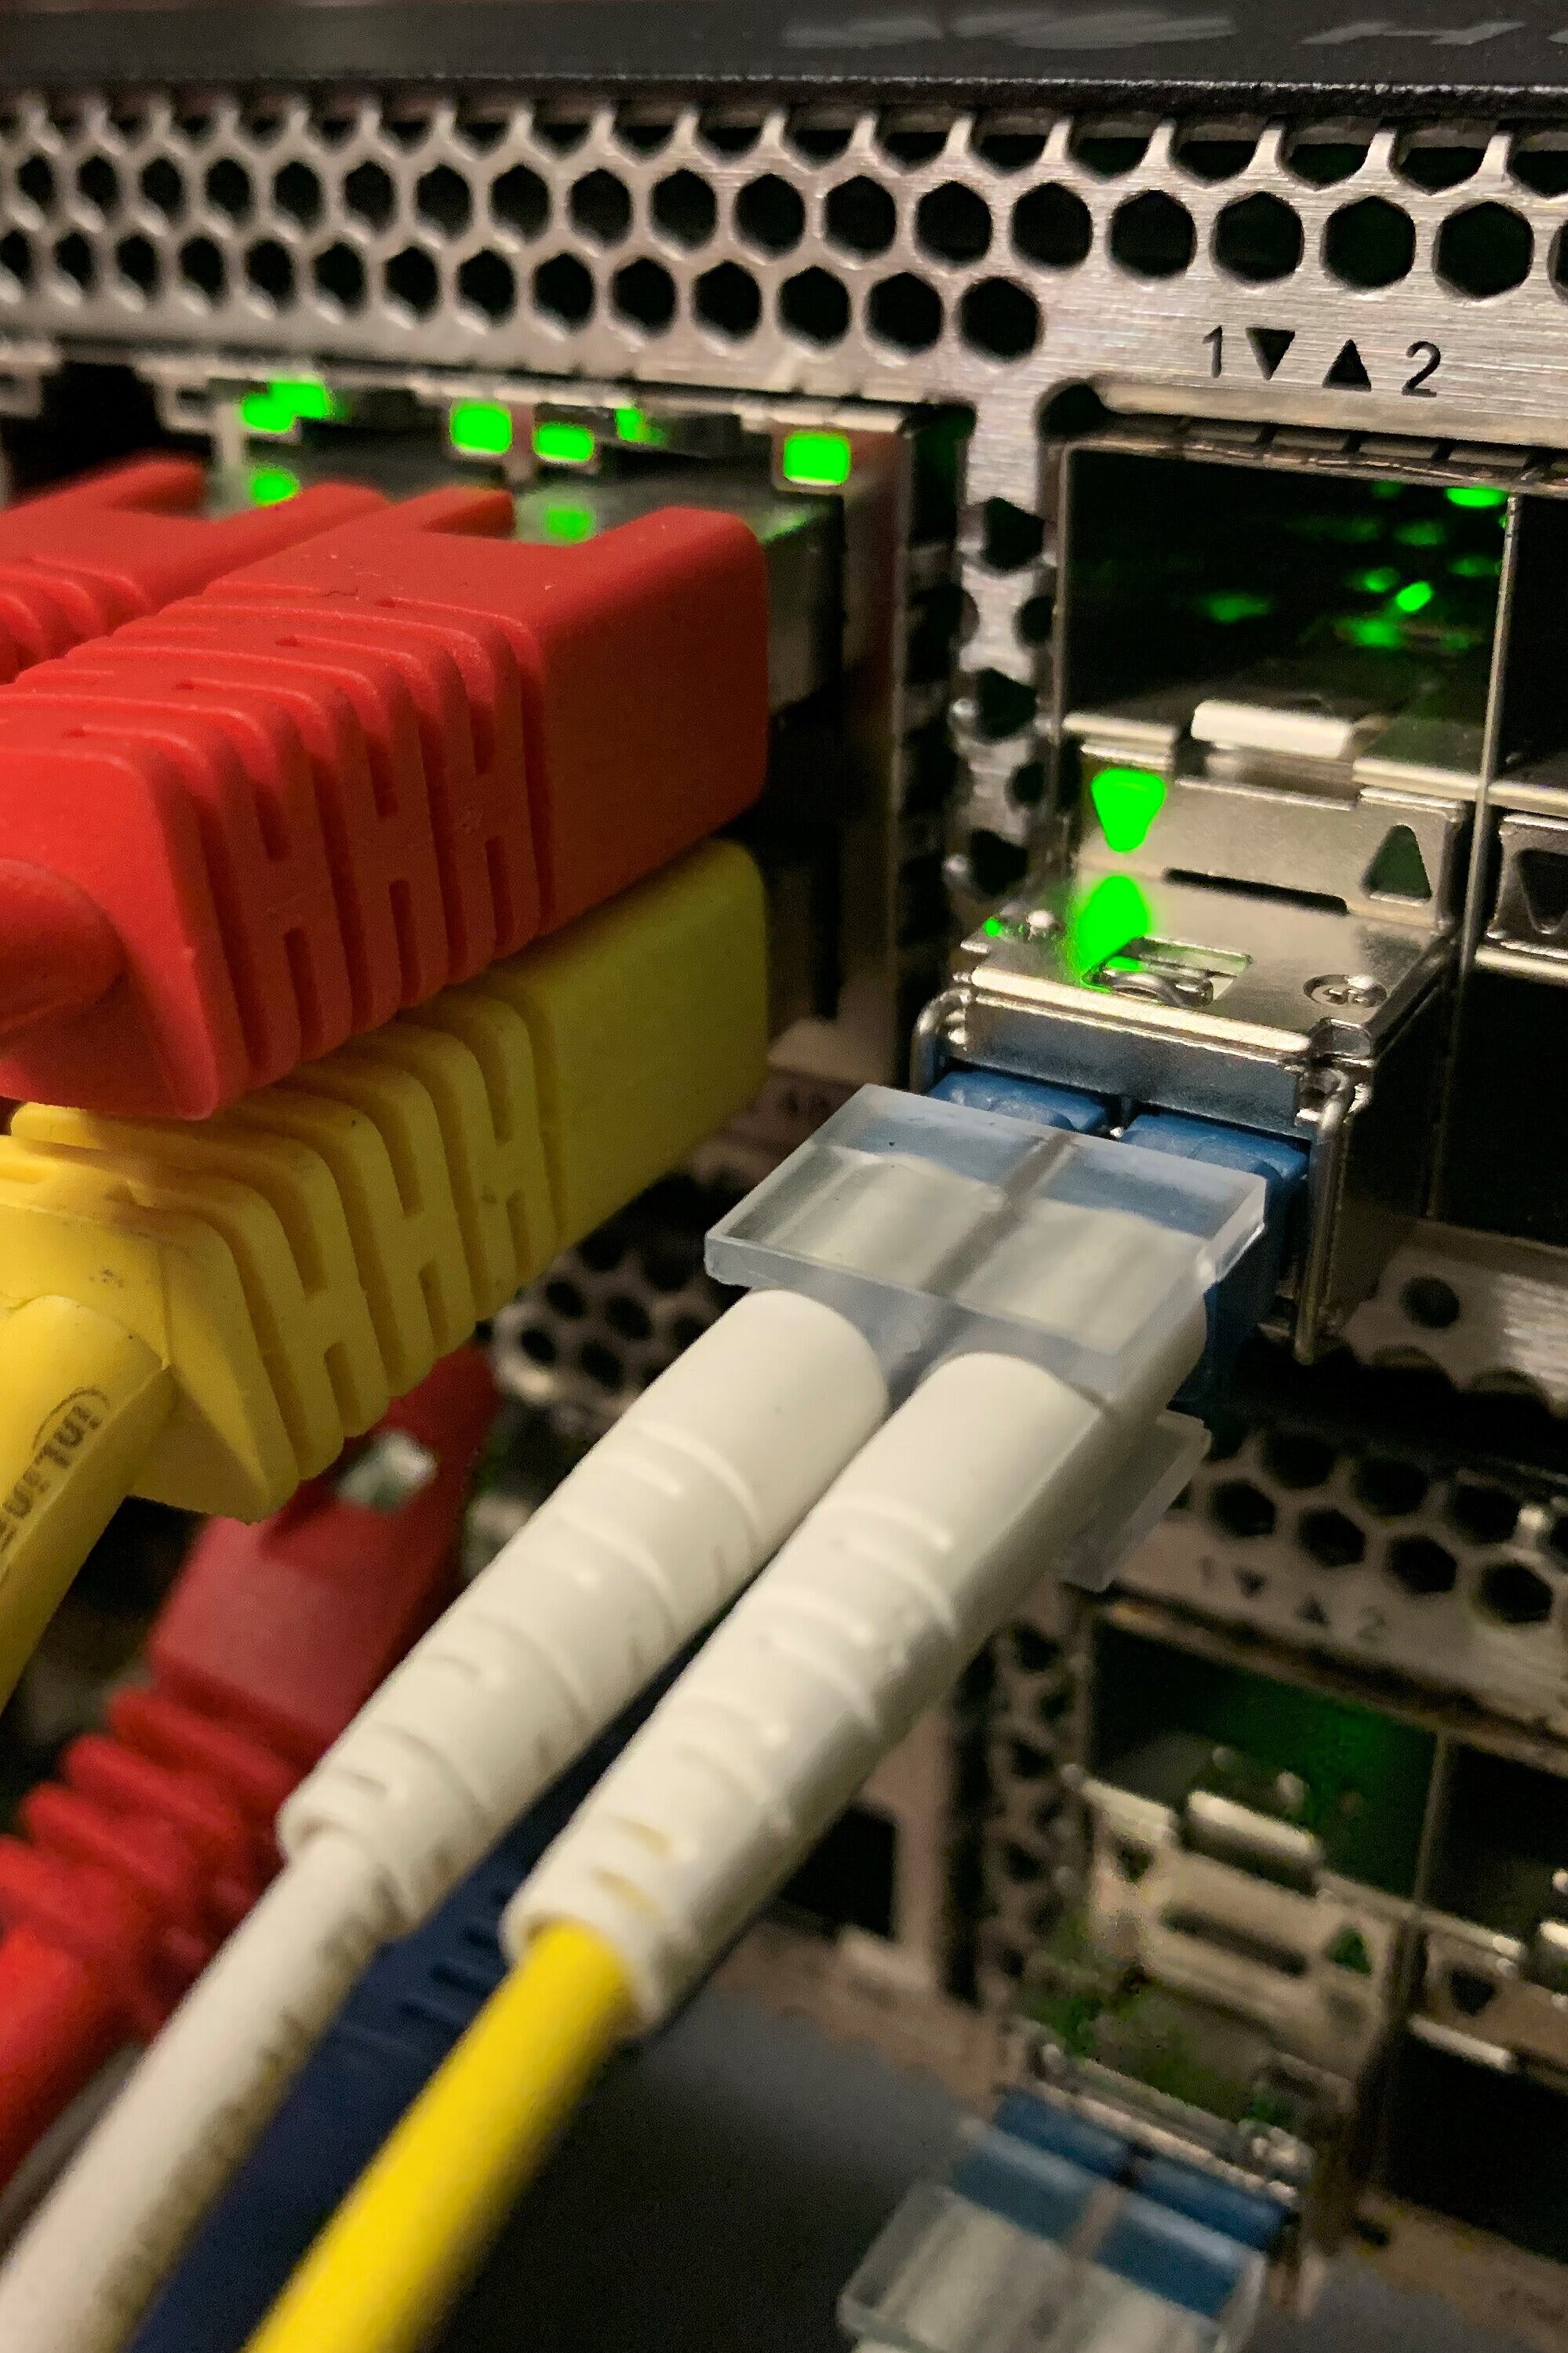 Foto: Viele Stecker eines Servers